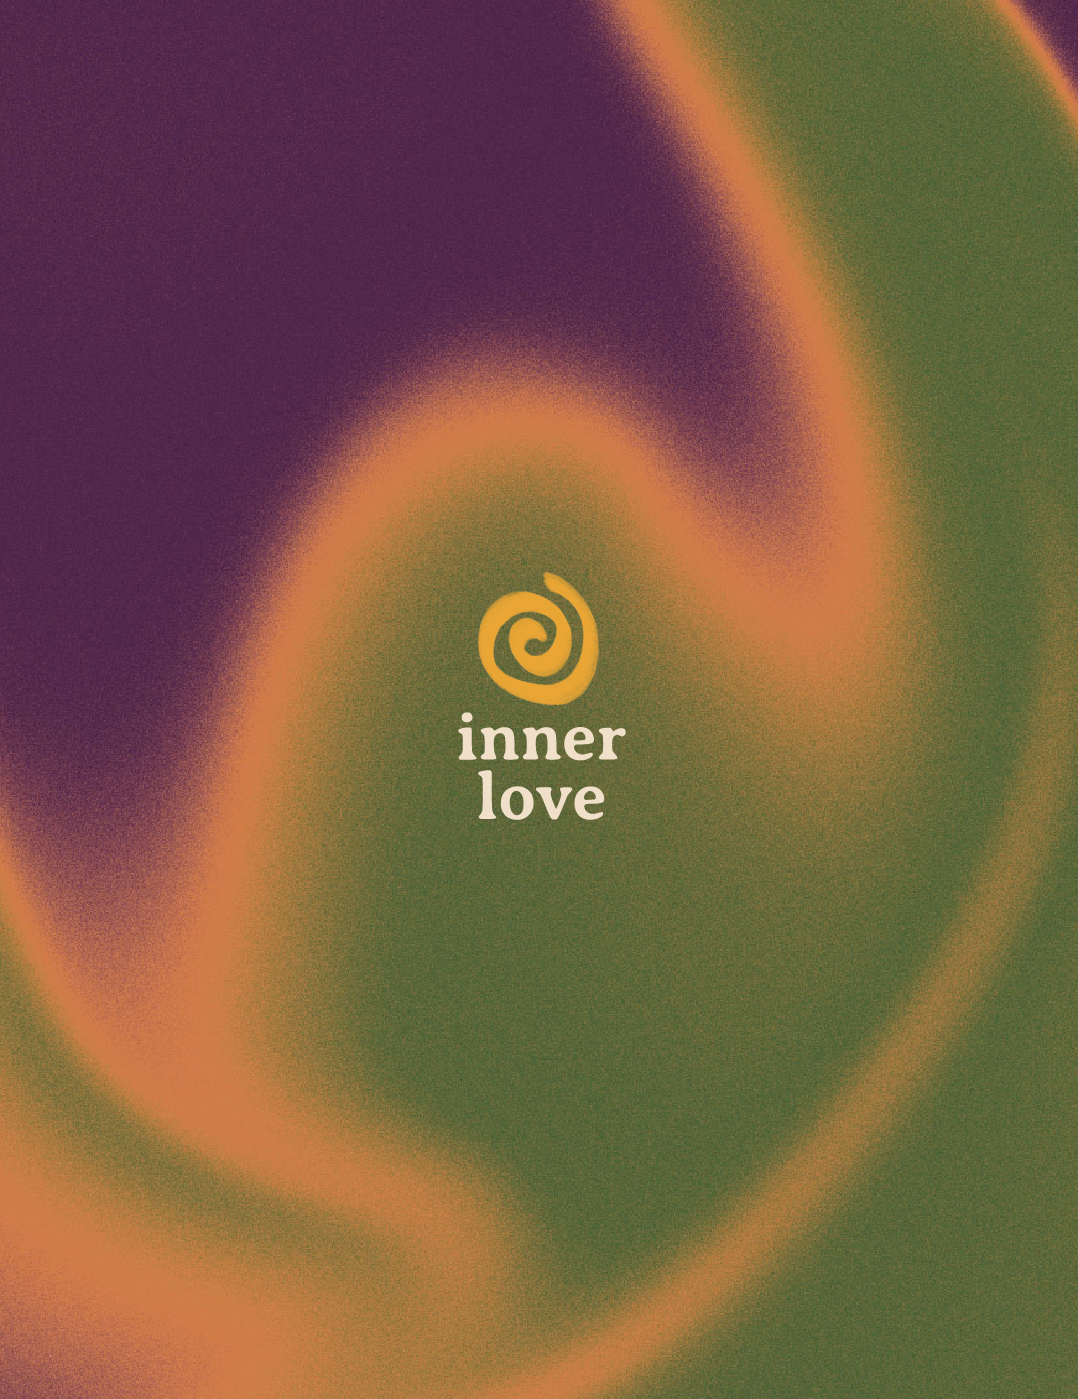 inner love visual identity logo branding